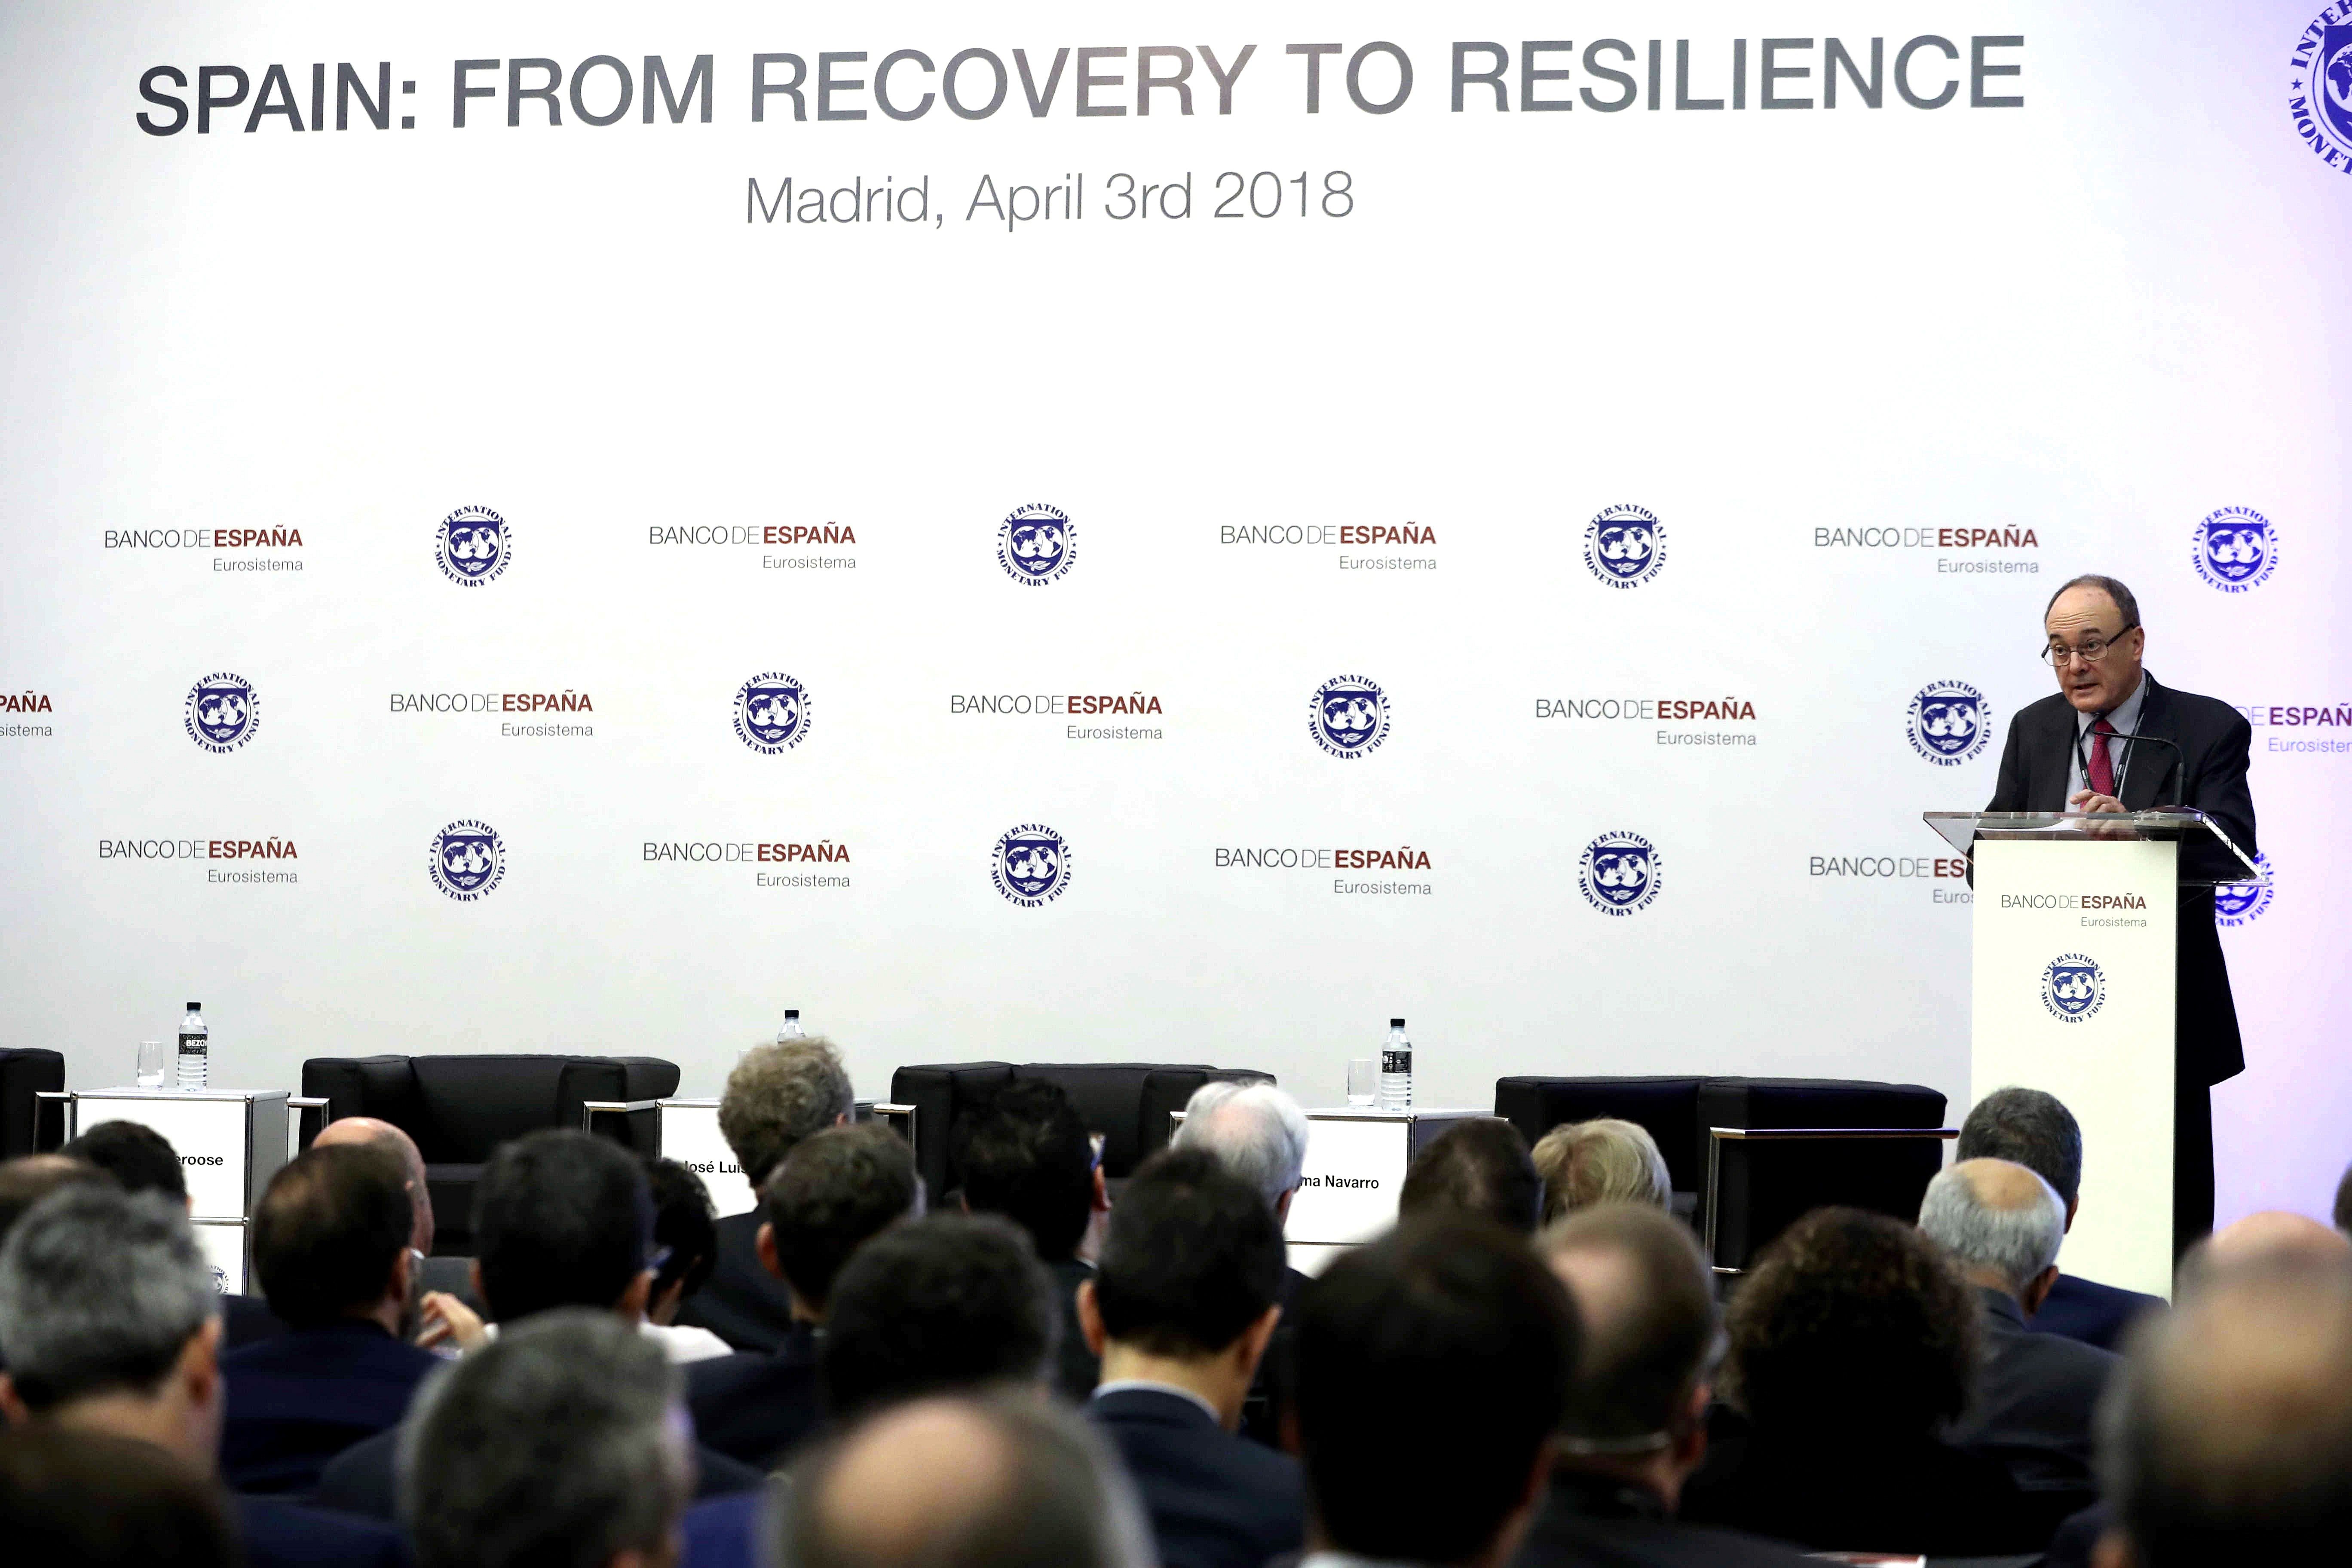 El Gobernador del Banco de España, Luis María Linde, inaugura la conferencia conjunta con el Fondo Monetario Internacional (FMI) "España: de la recuperación a la resiliencia